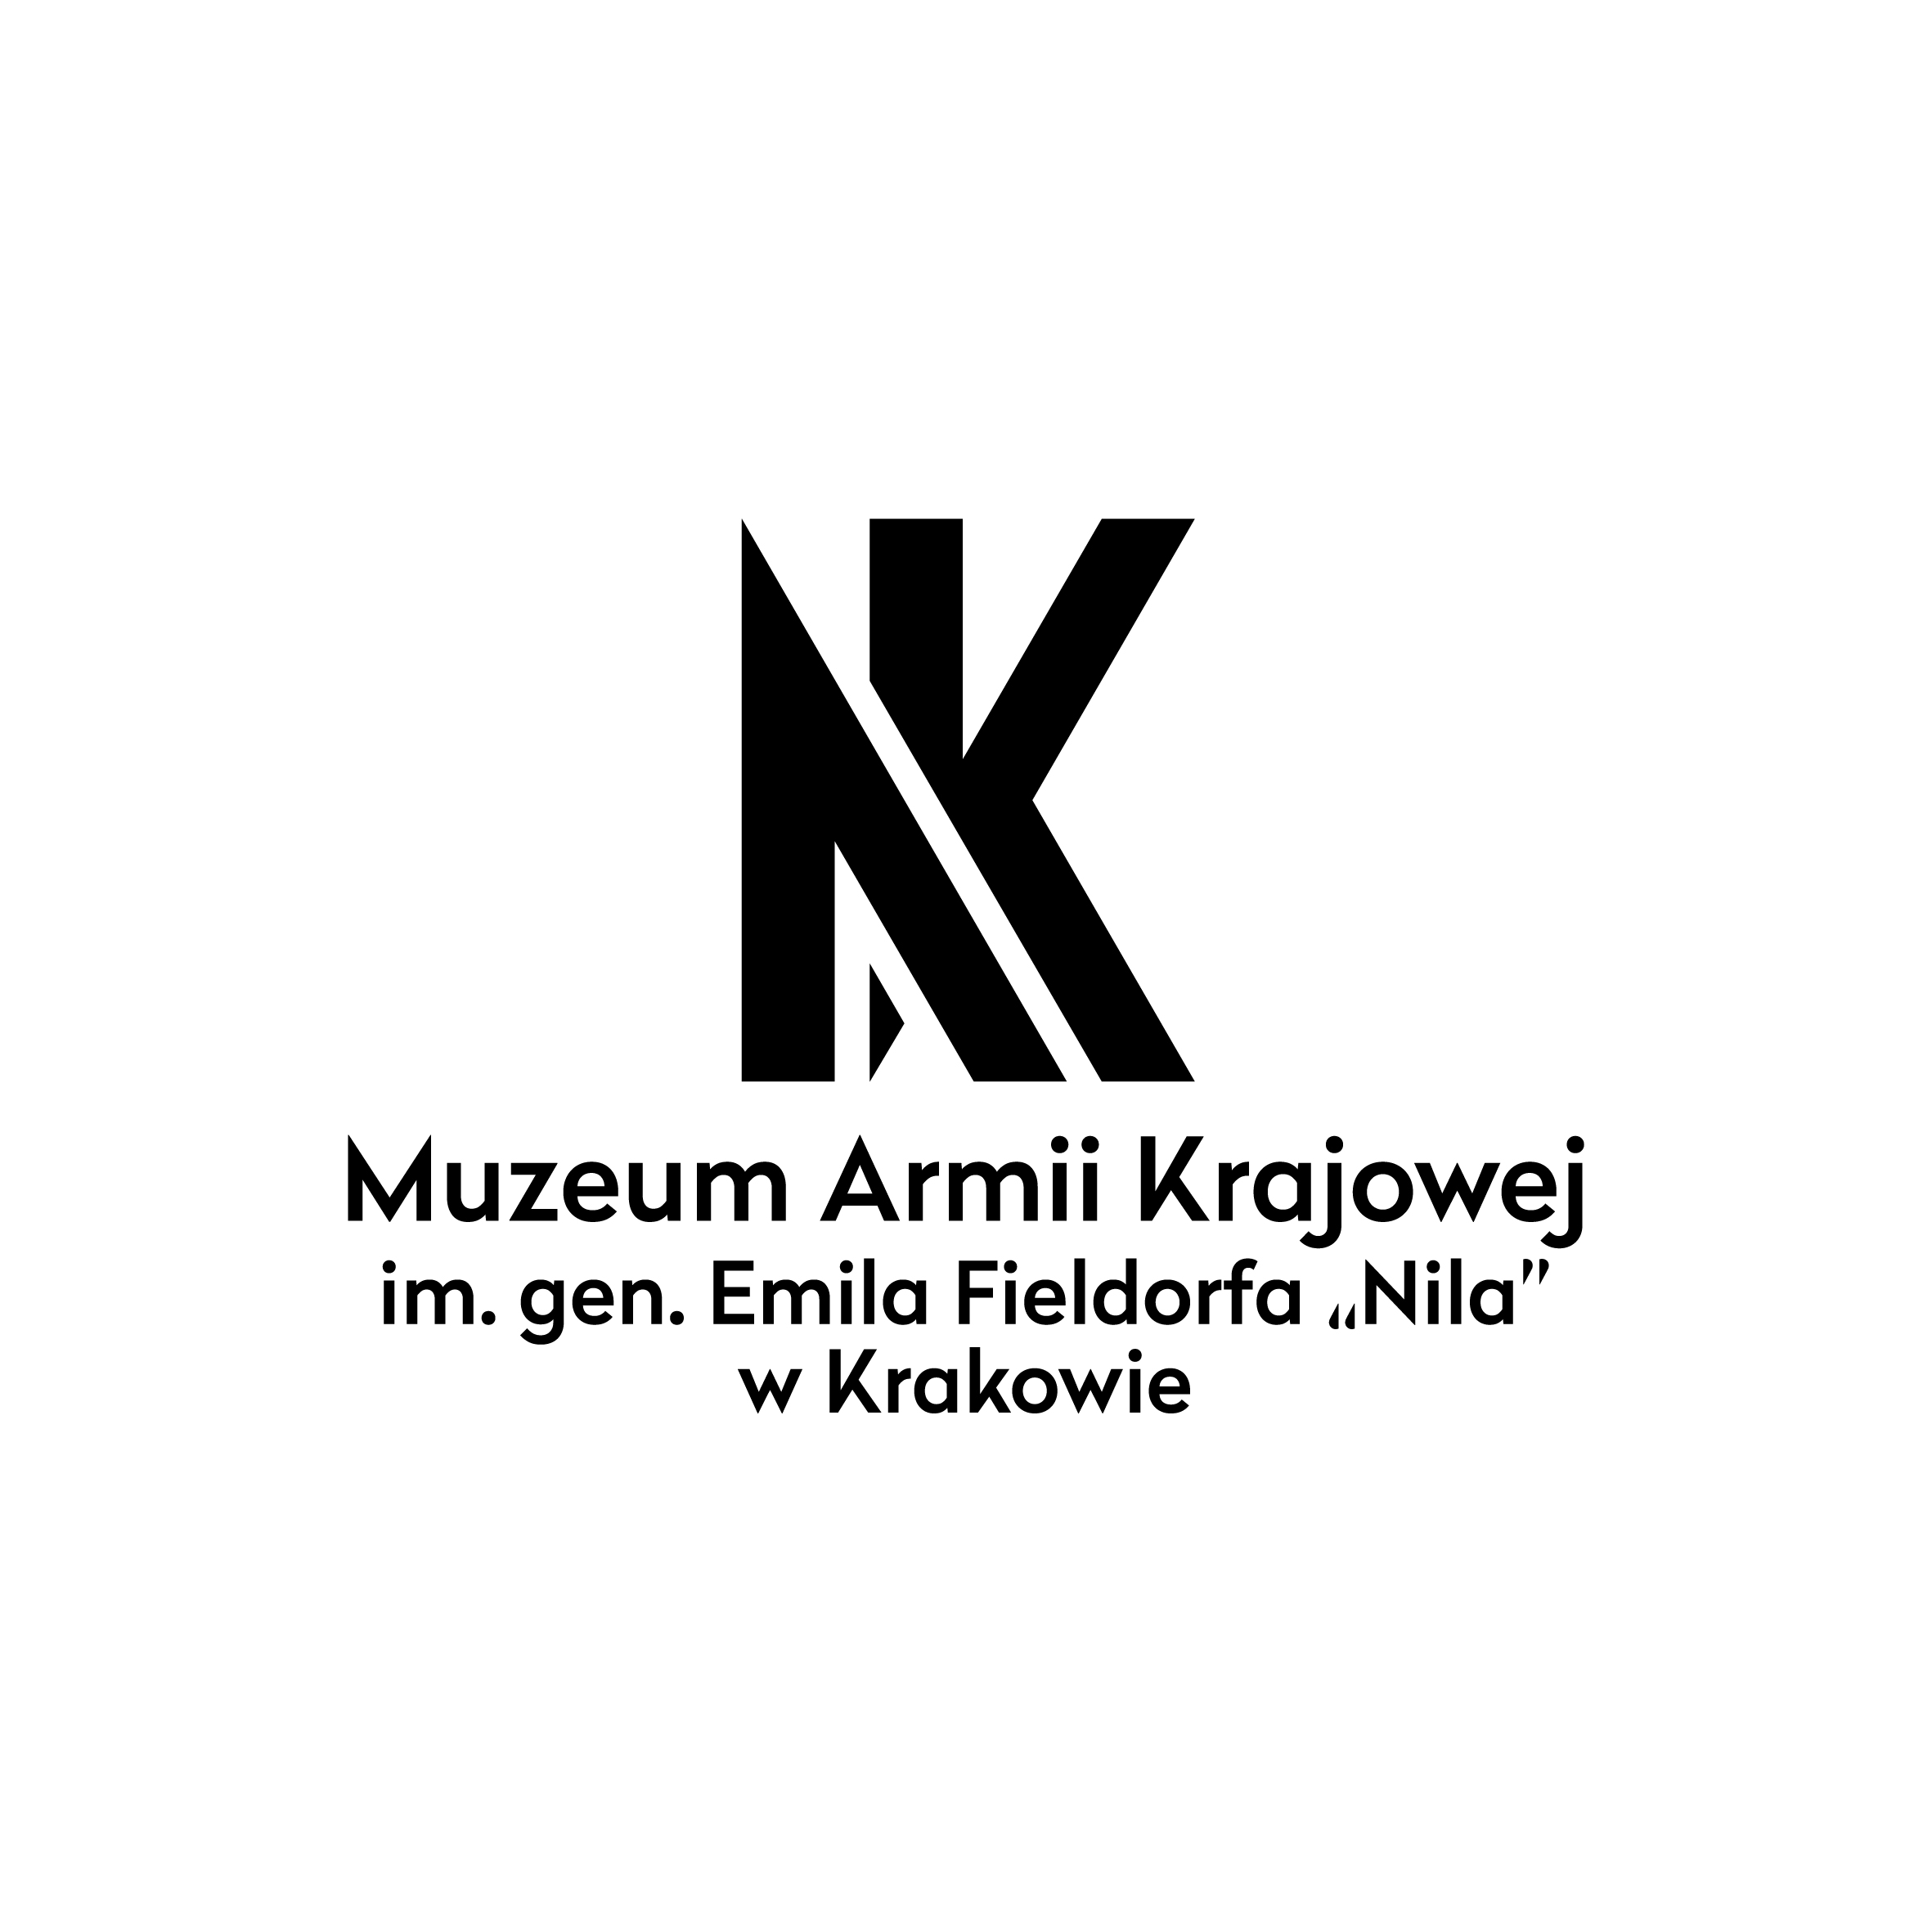 Na górze czarne, polaczone ze sobą litery A oraz K. Poniżej czarny napis w trzech rzędach: Muzeum Armii Krajowej im. gen. Emila Firldorfa 